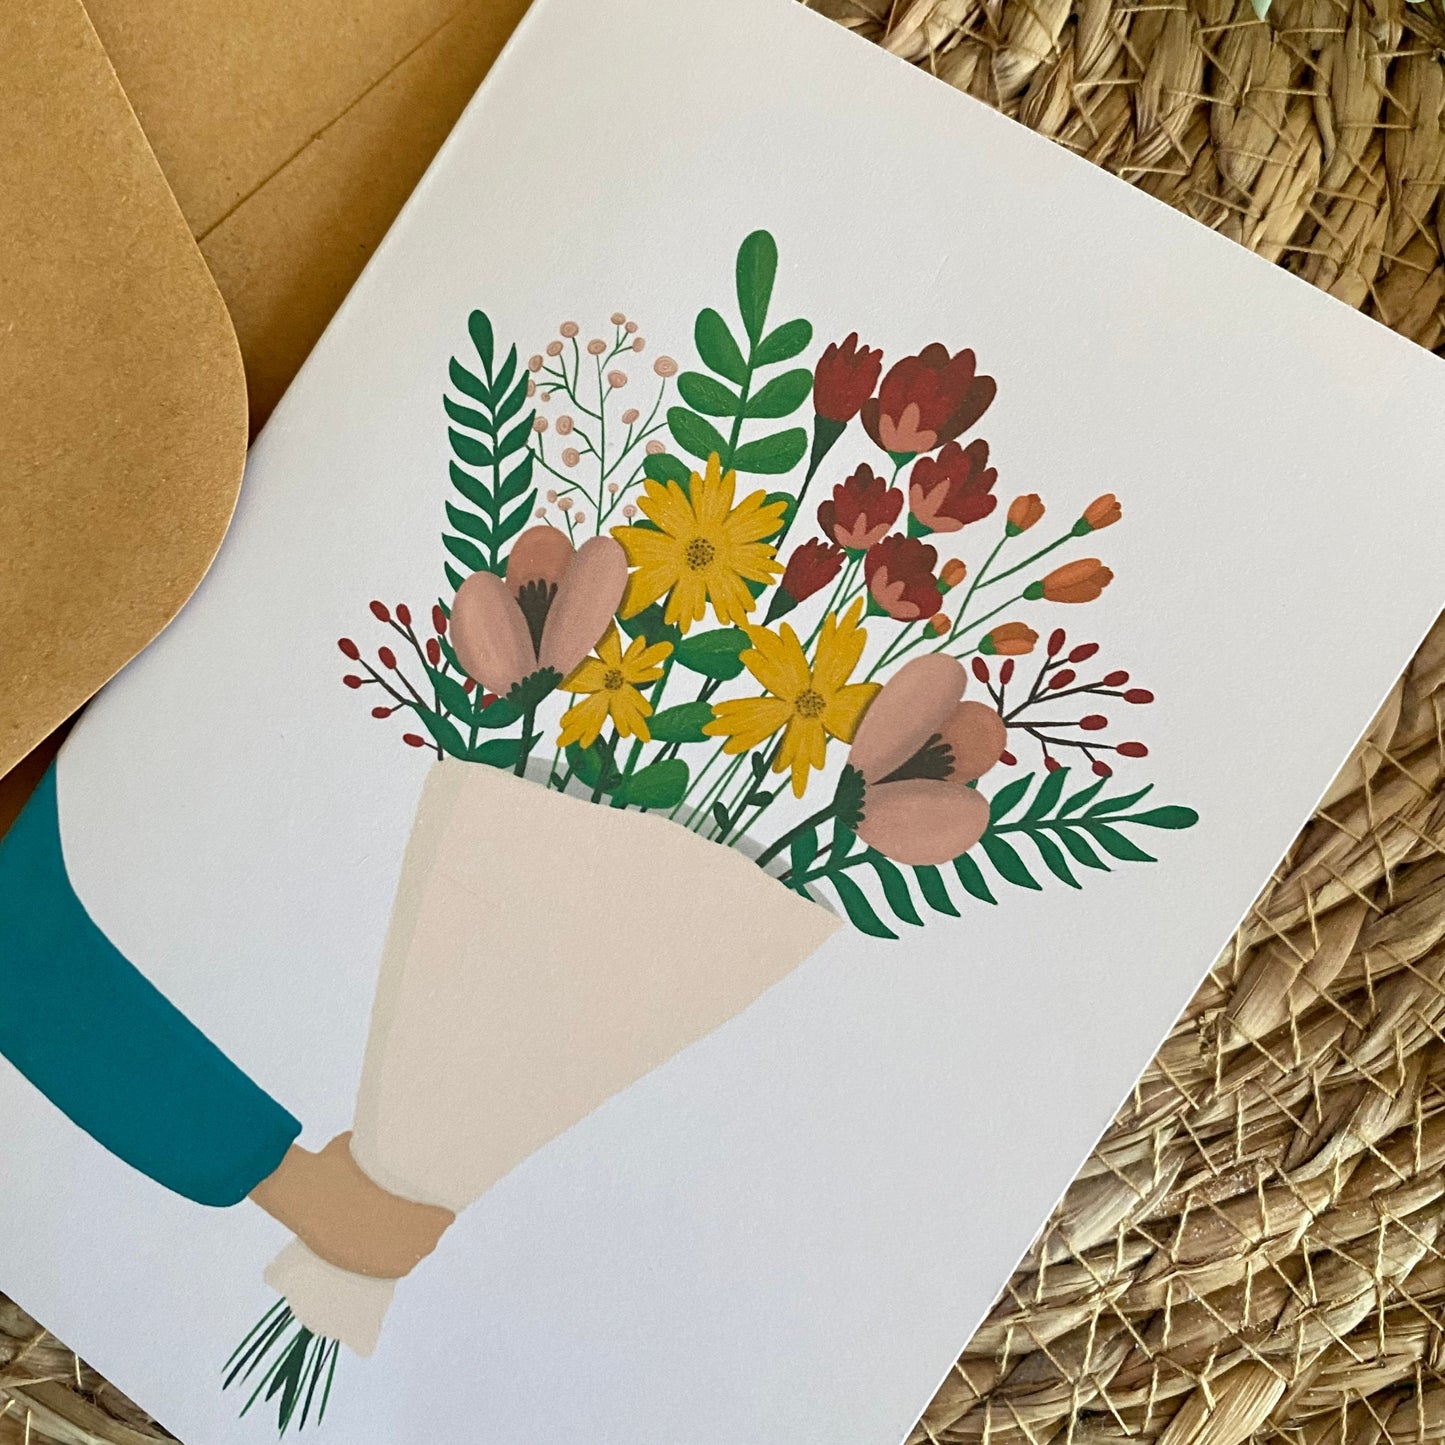 Flower bouquet - Card folded